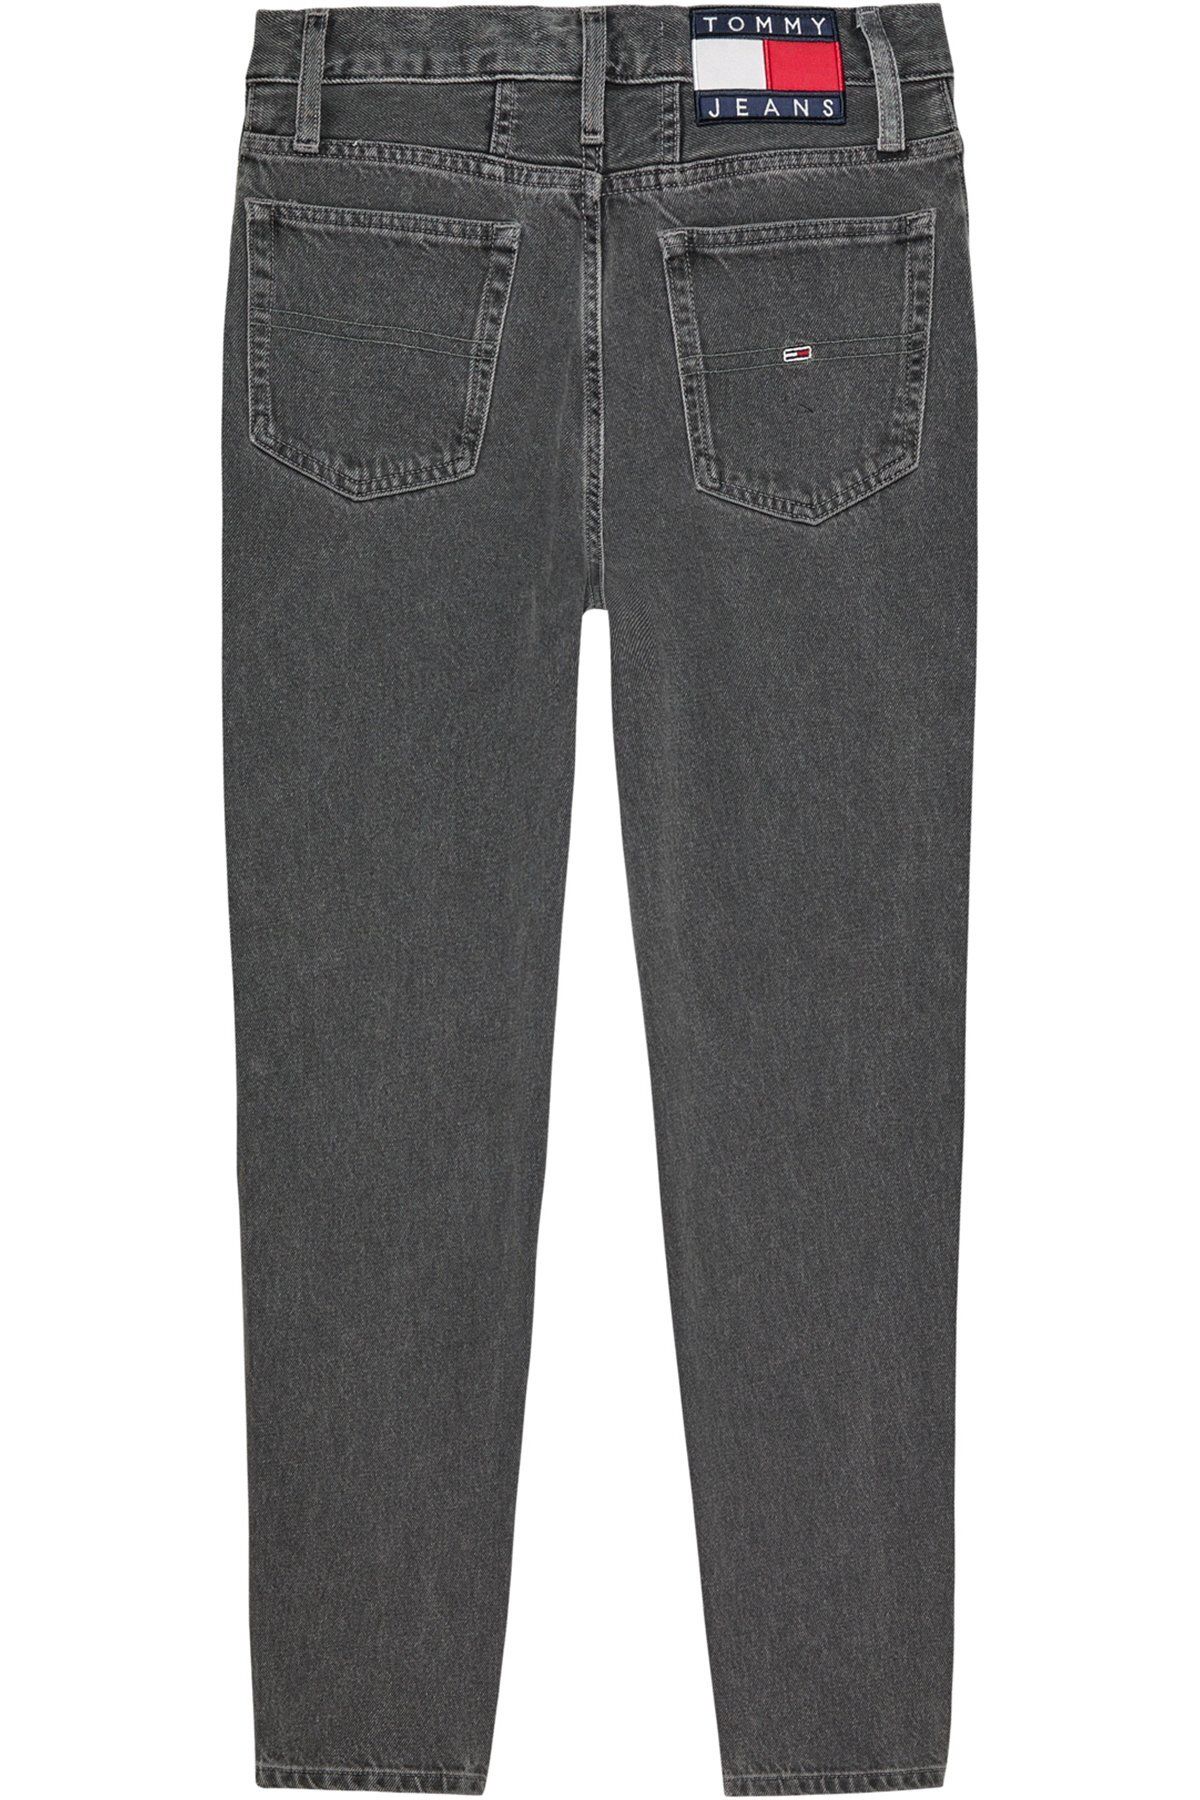 Tommy Jeans جین خاکستری زنانه (کد مدل: DW0DW16647)